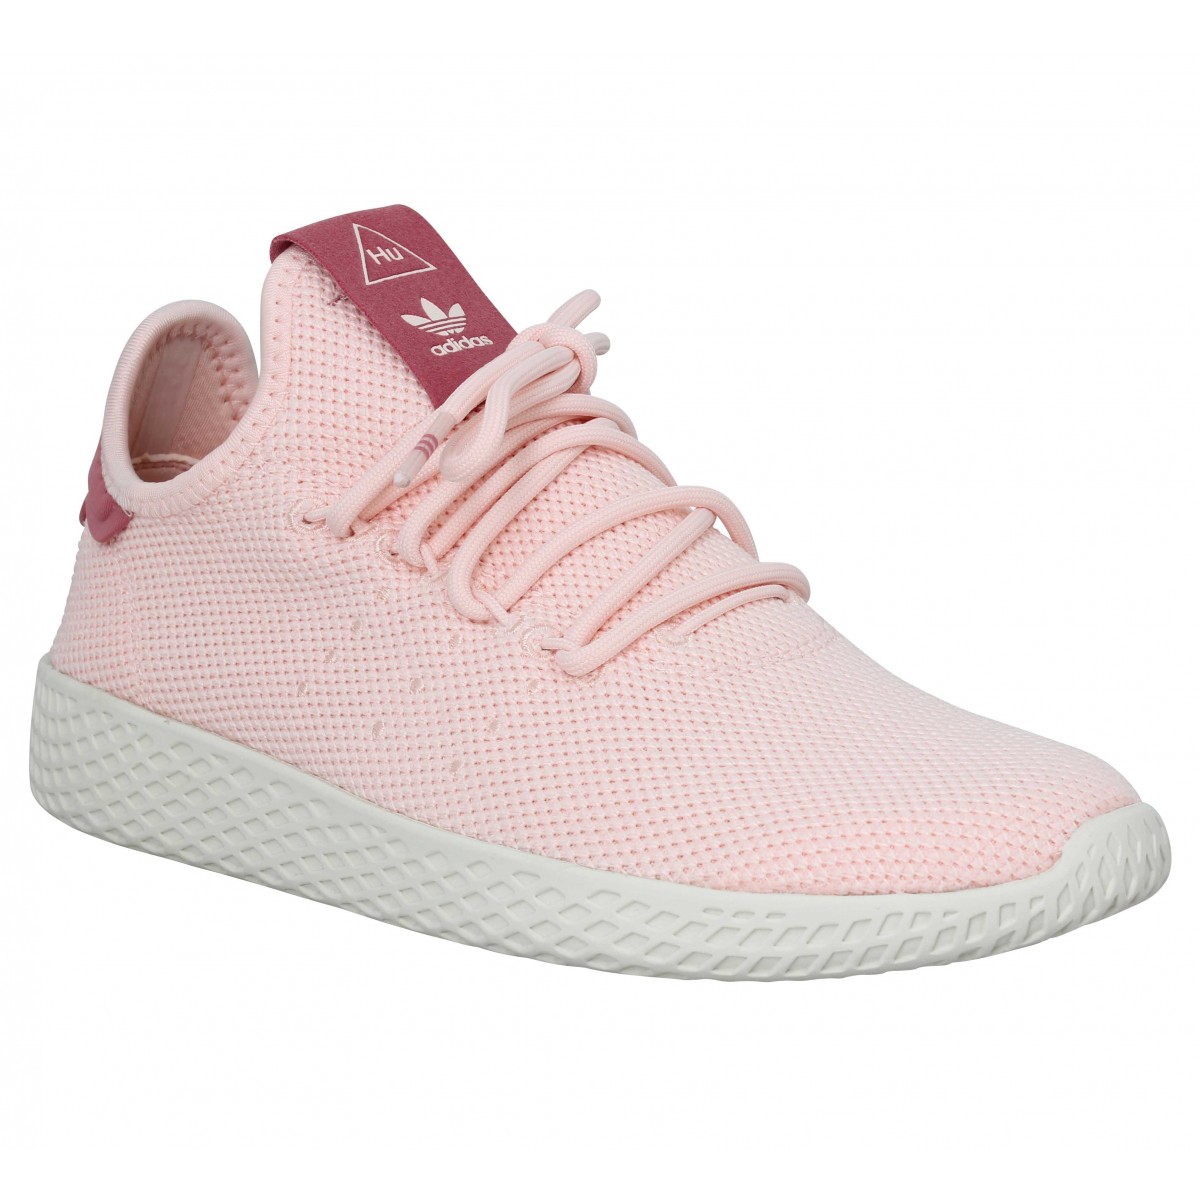 basket adidas femme blanche et rose